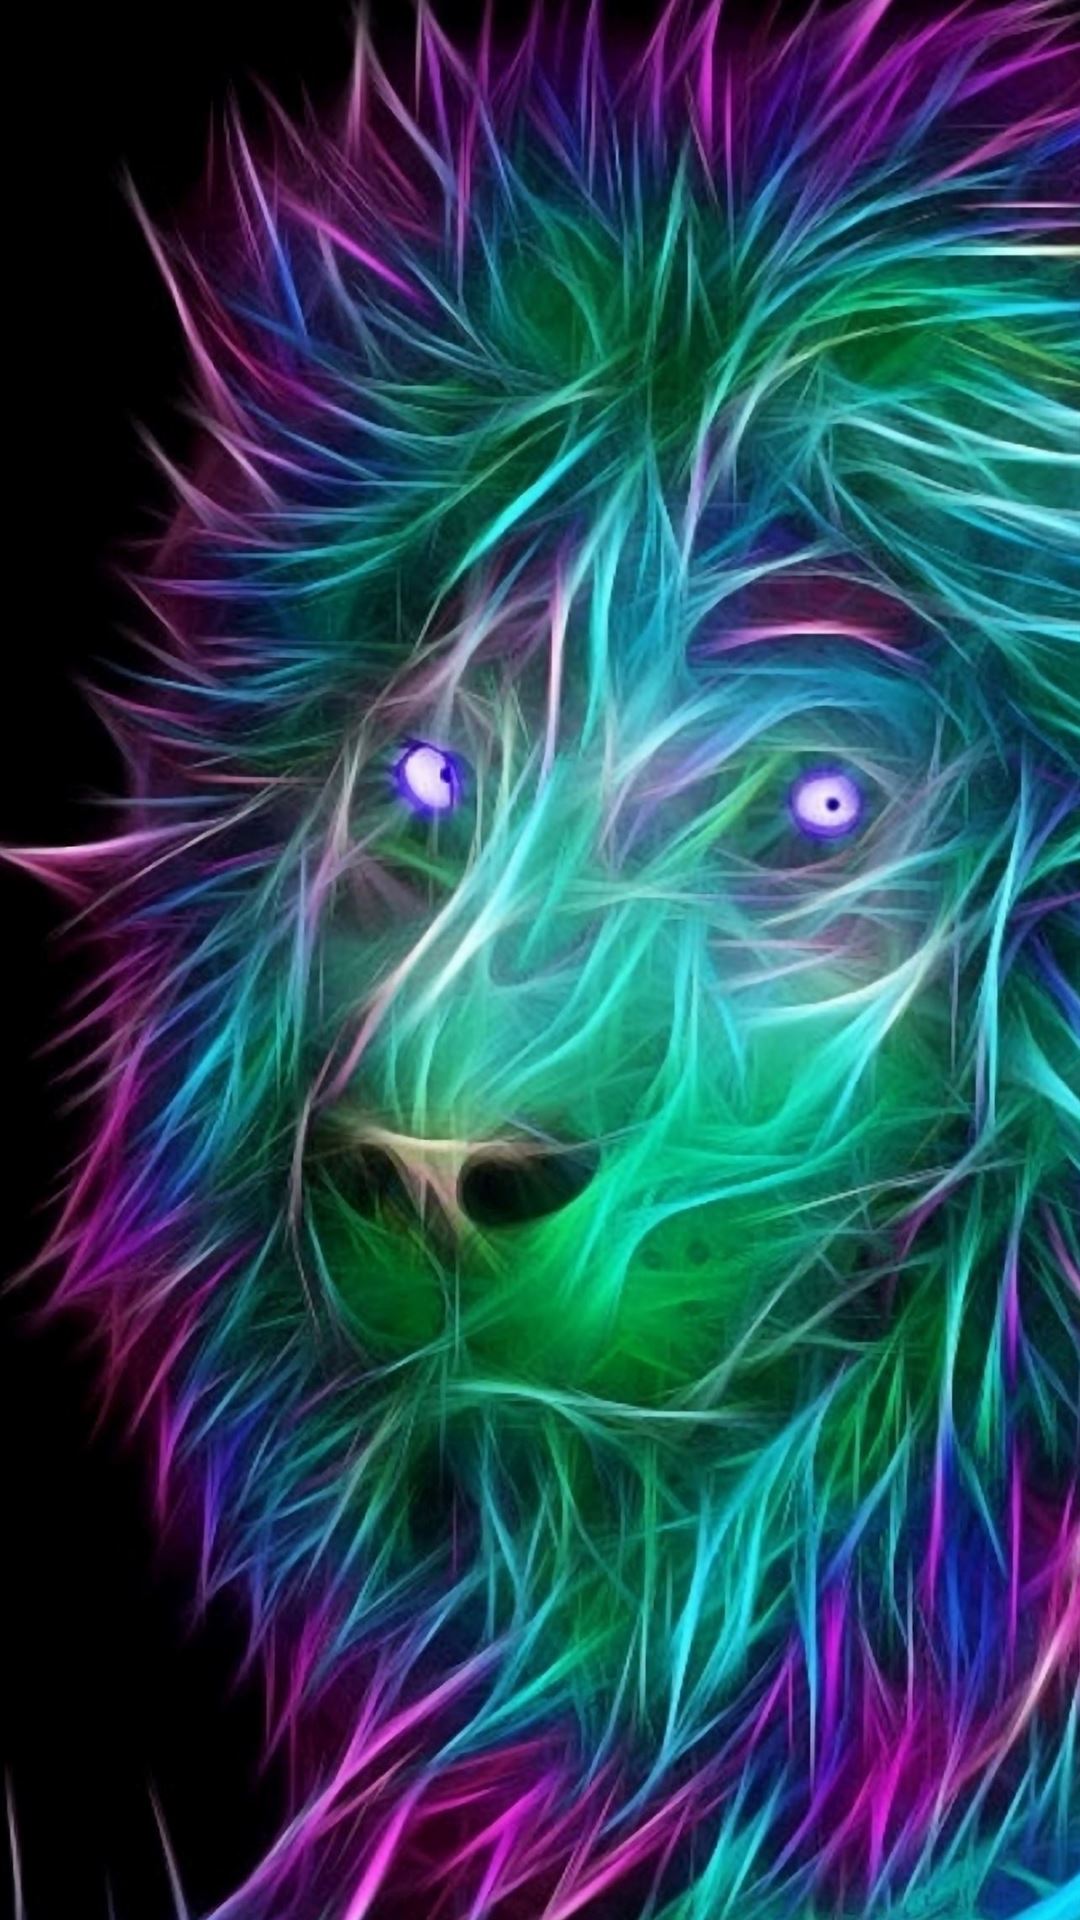 Nâng tầm trải nghiệm điện thoại của bạn với hình nền iPhone đầy màu sắc và nghệ thuật! Sử dụng hình ảnh sư tử 3D nghệ thuật để tạo ra một điểm nhấn độc đáo trên màn hình của bạn. Khám phá ngay những tùy chọn hấp dẫn và độc quyền của chúng tôi để tìm ra lựa chọn phù hợp với cá tính của bạn.